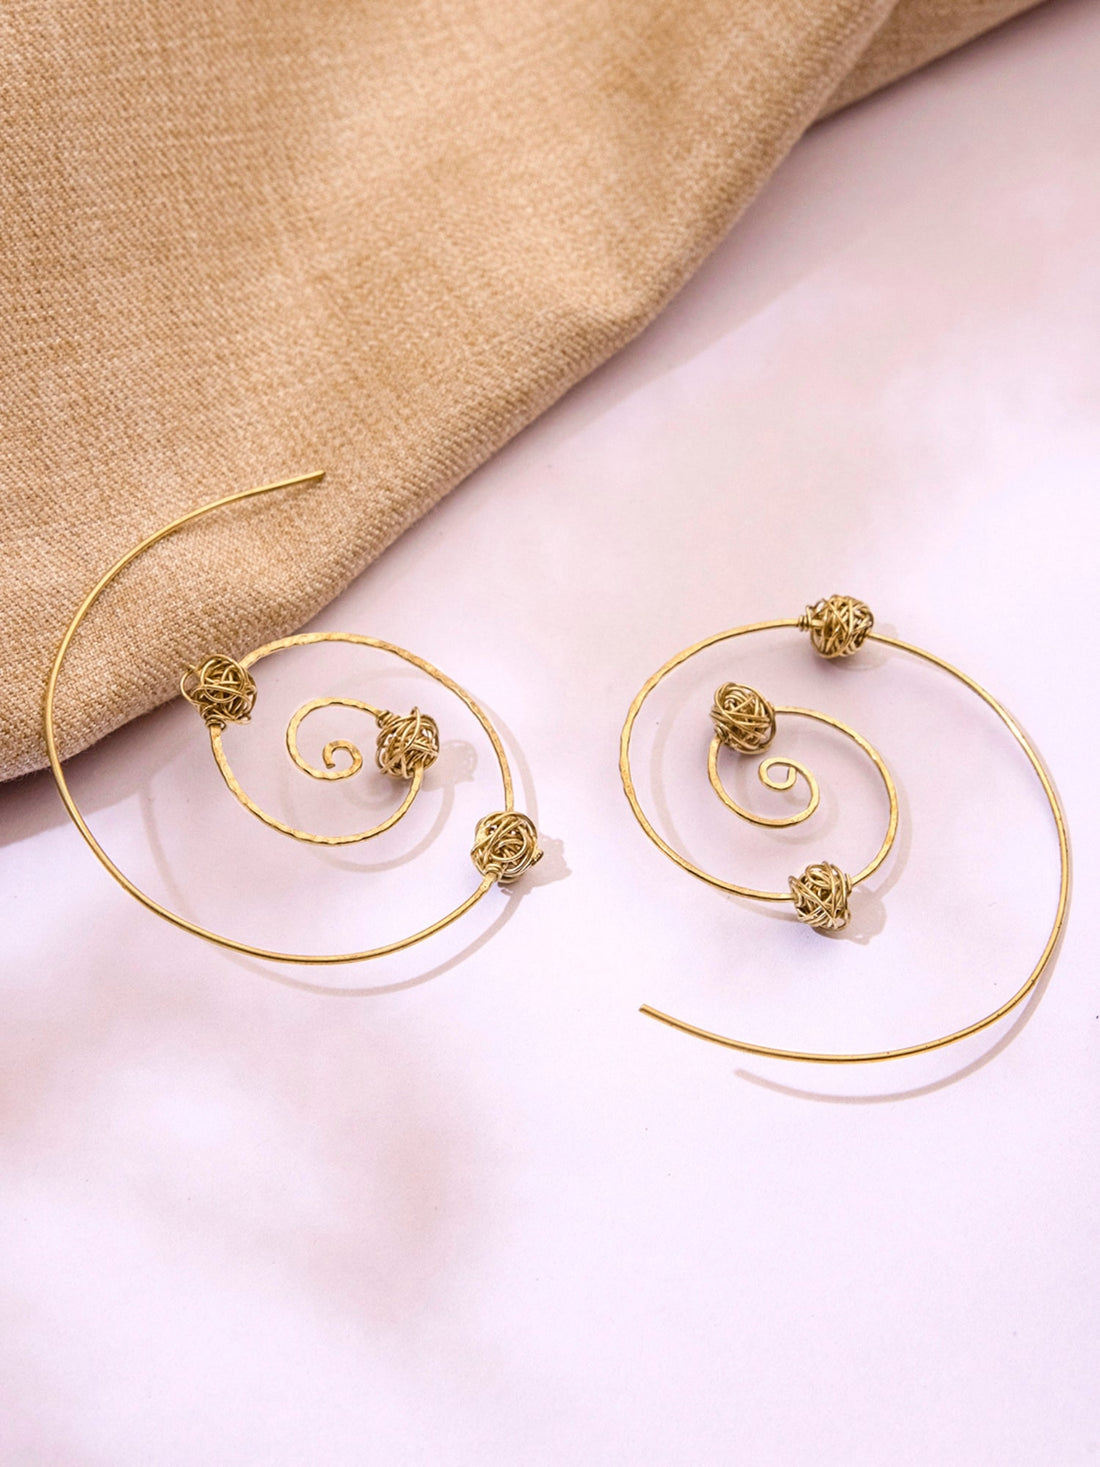 Festive Wear Hoops Earrings - Minimal Gold-Plated Brass Earrings By Studio One Love